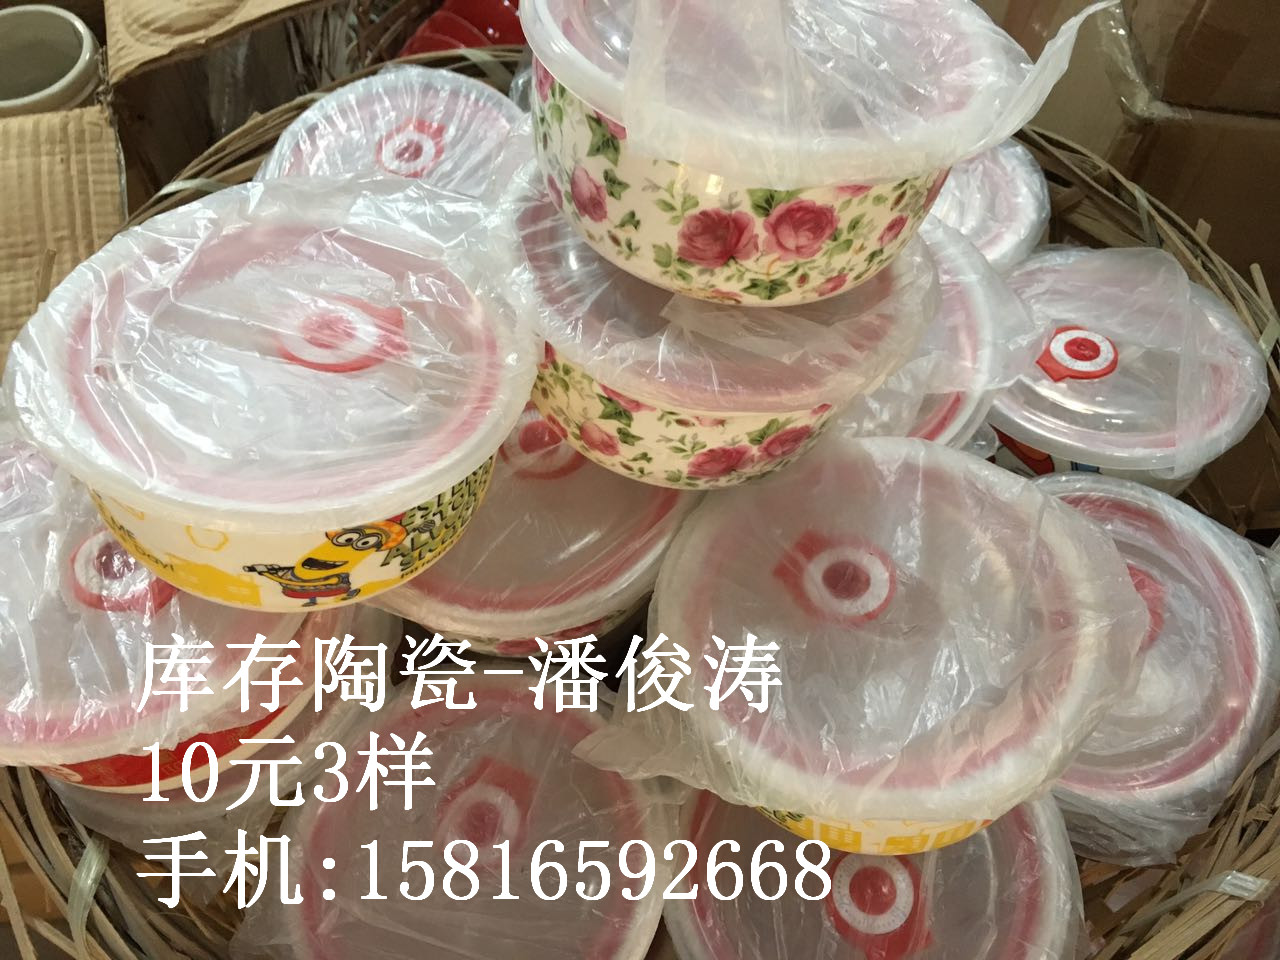 上海地摊陶瓷 陶瓷保鲜碗批发图片